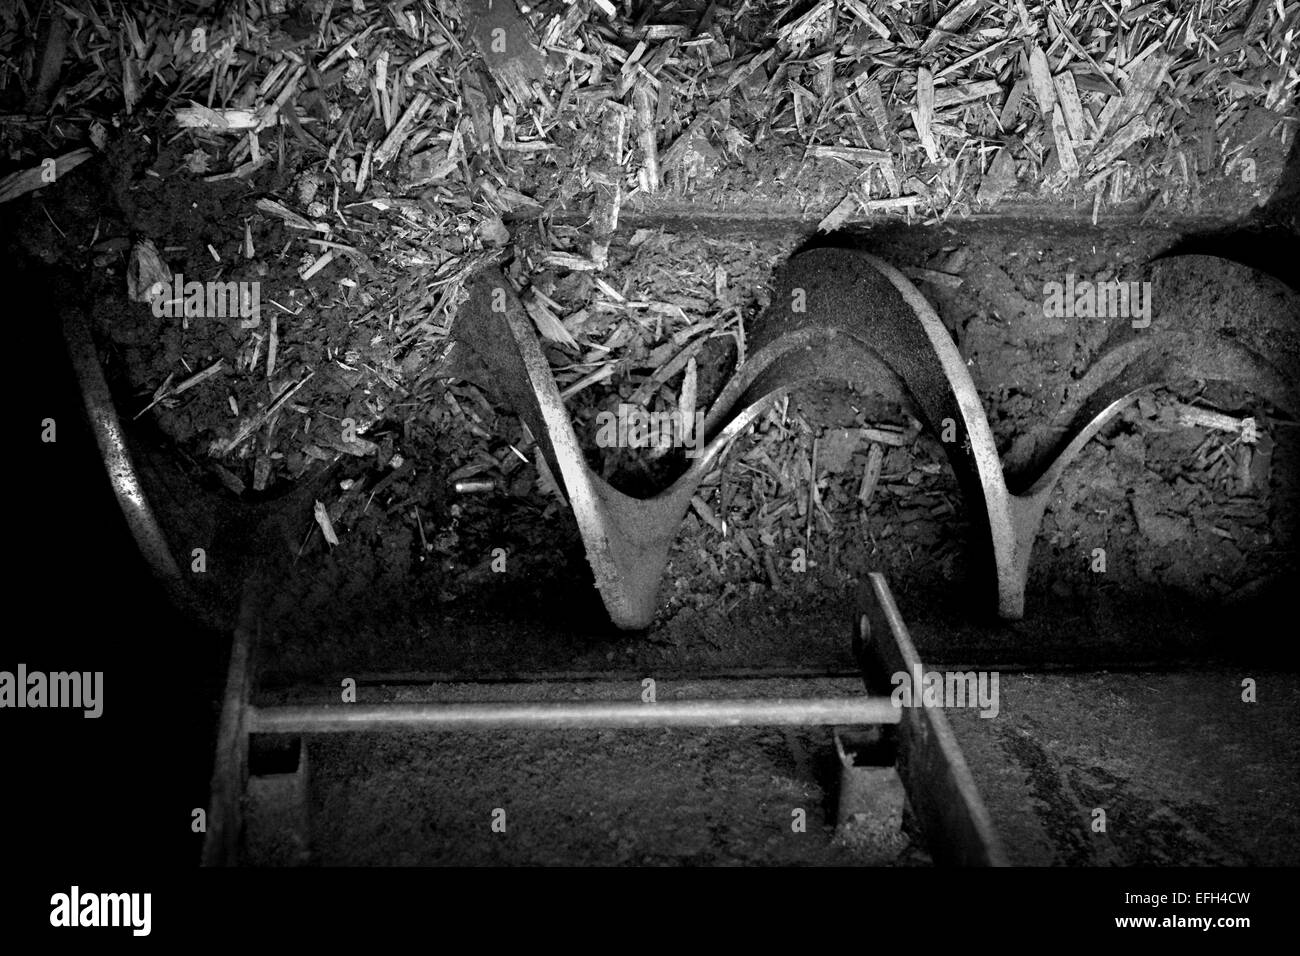 Détail de l'engrenage de la machine industrielle dans les composants de l'usine de biomasse, noir & blanc, Close up Banque D'Images